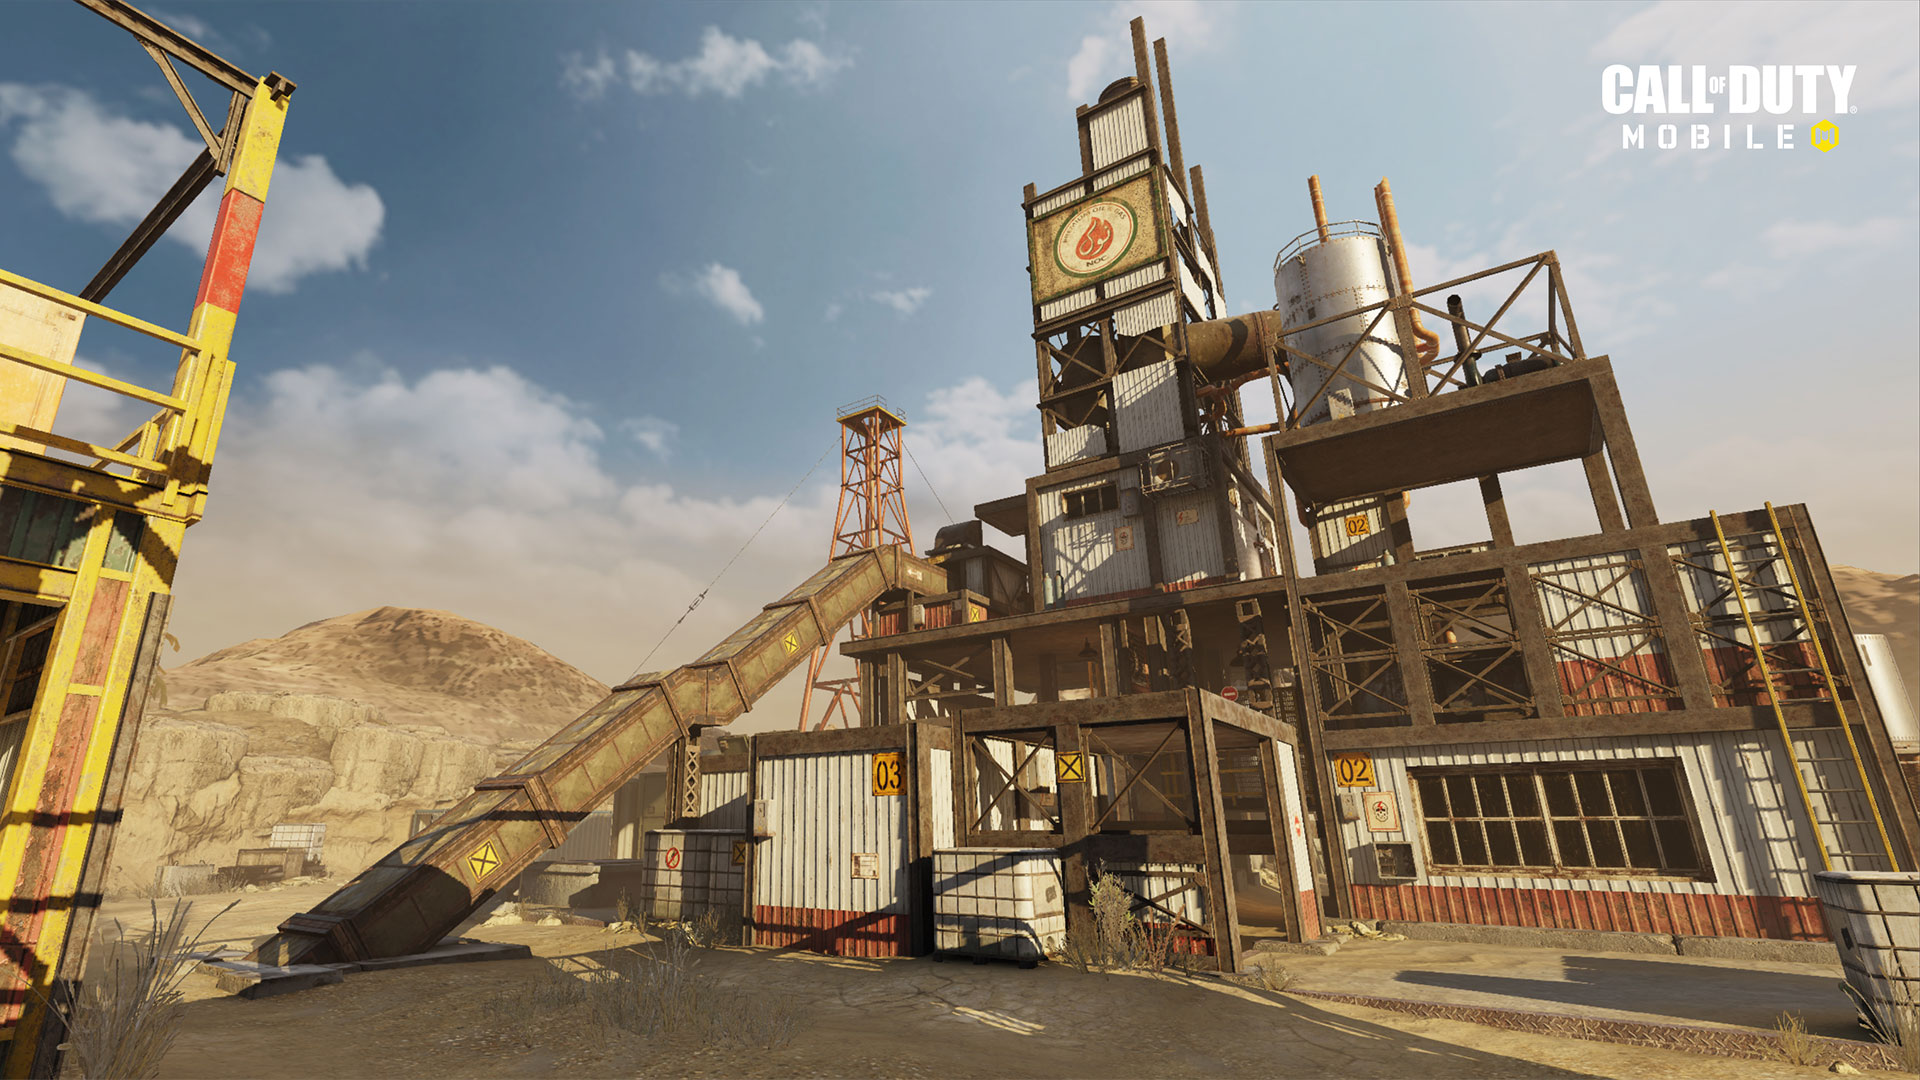 الإصدار 1.0.12 من "Call of Duty: Mobile" متاح الآن بشكل مباشر لتقديم الدعم للموسم التالي "ذات مرة في الصدأ" ، وخرائط جديدة ، وموسم جديد مصنّف ، والمزيد 2